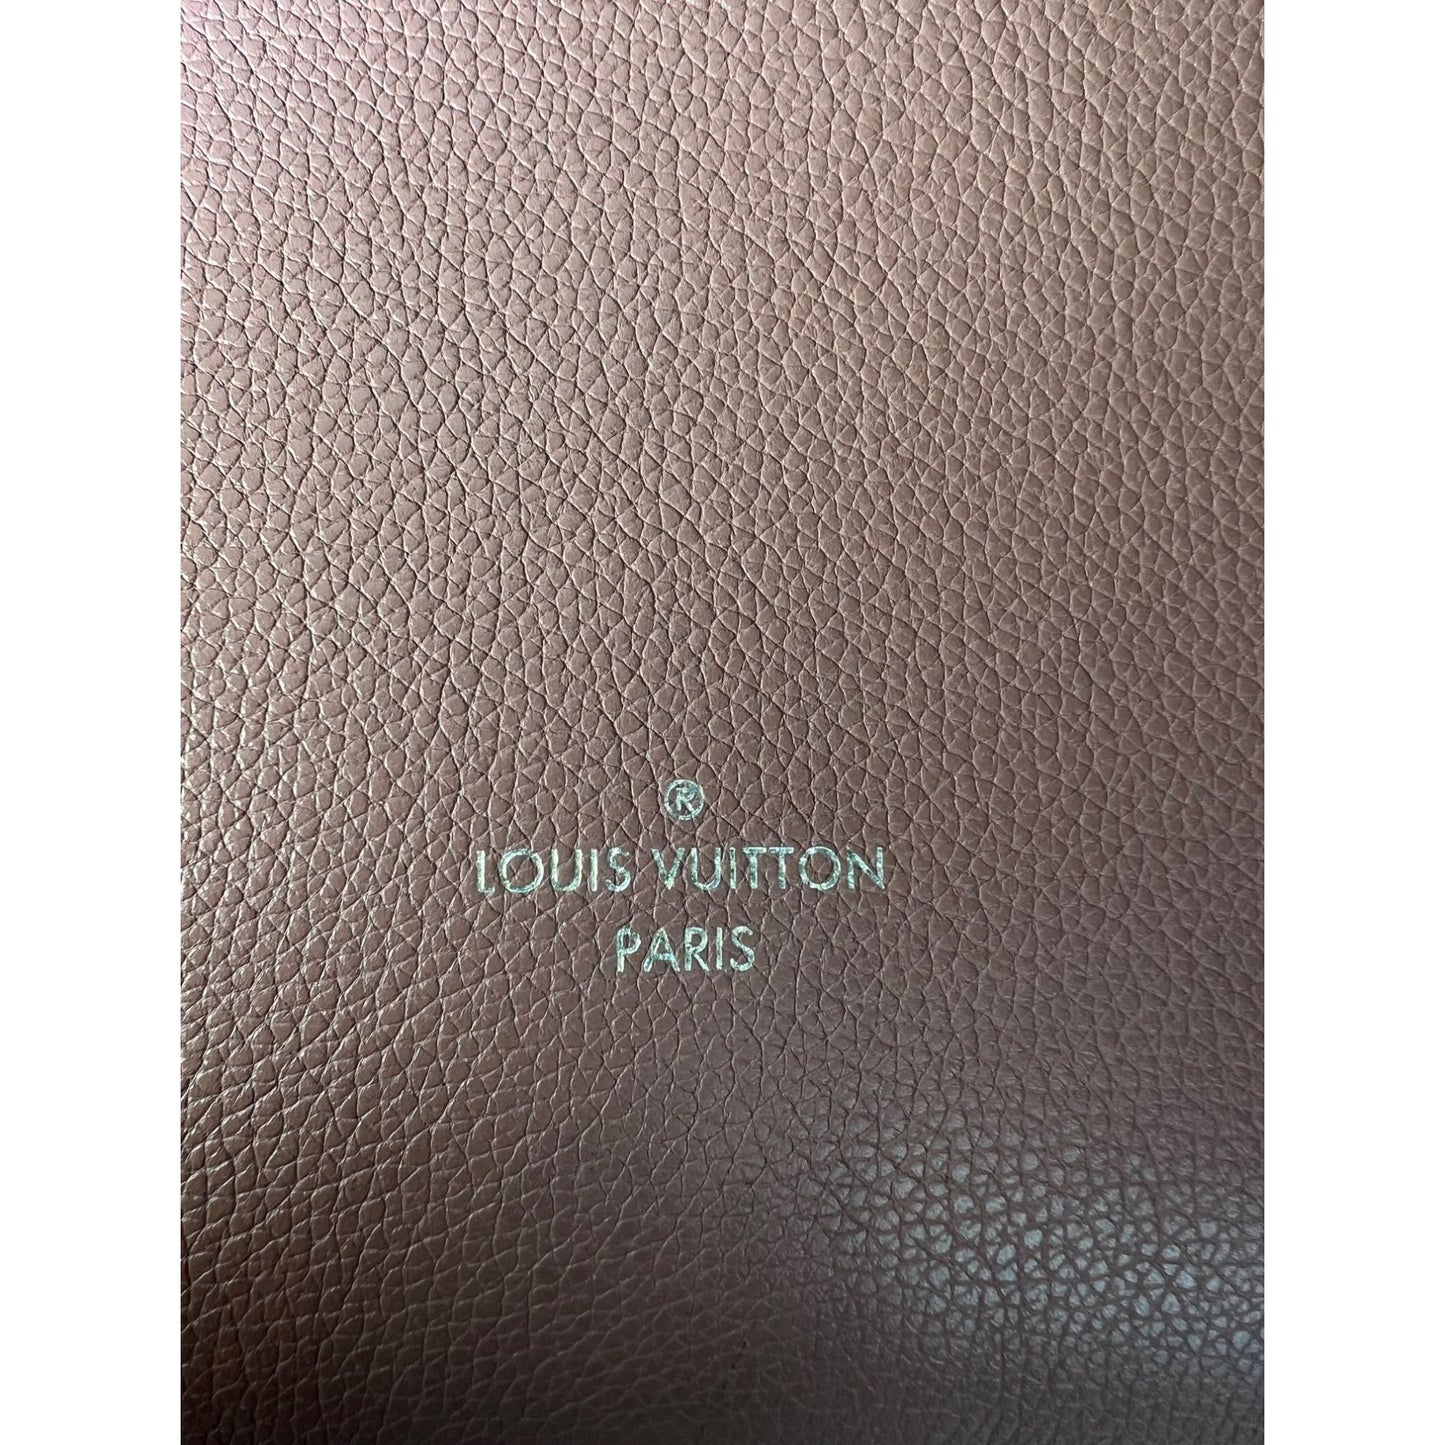 Louis Vuitton Monogram Canvas Kimono Wallet